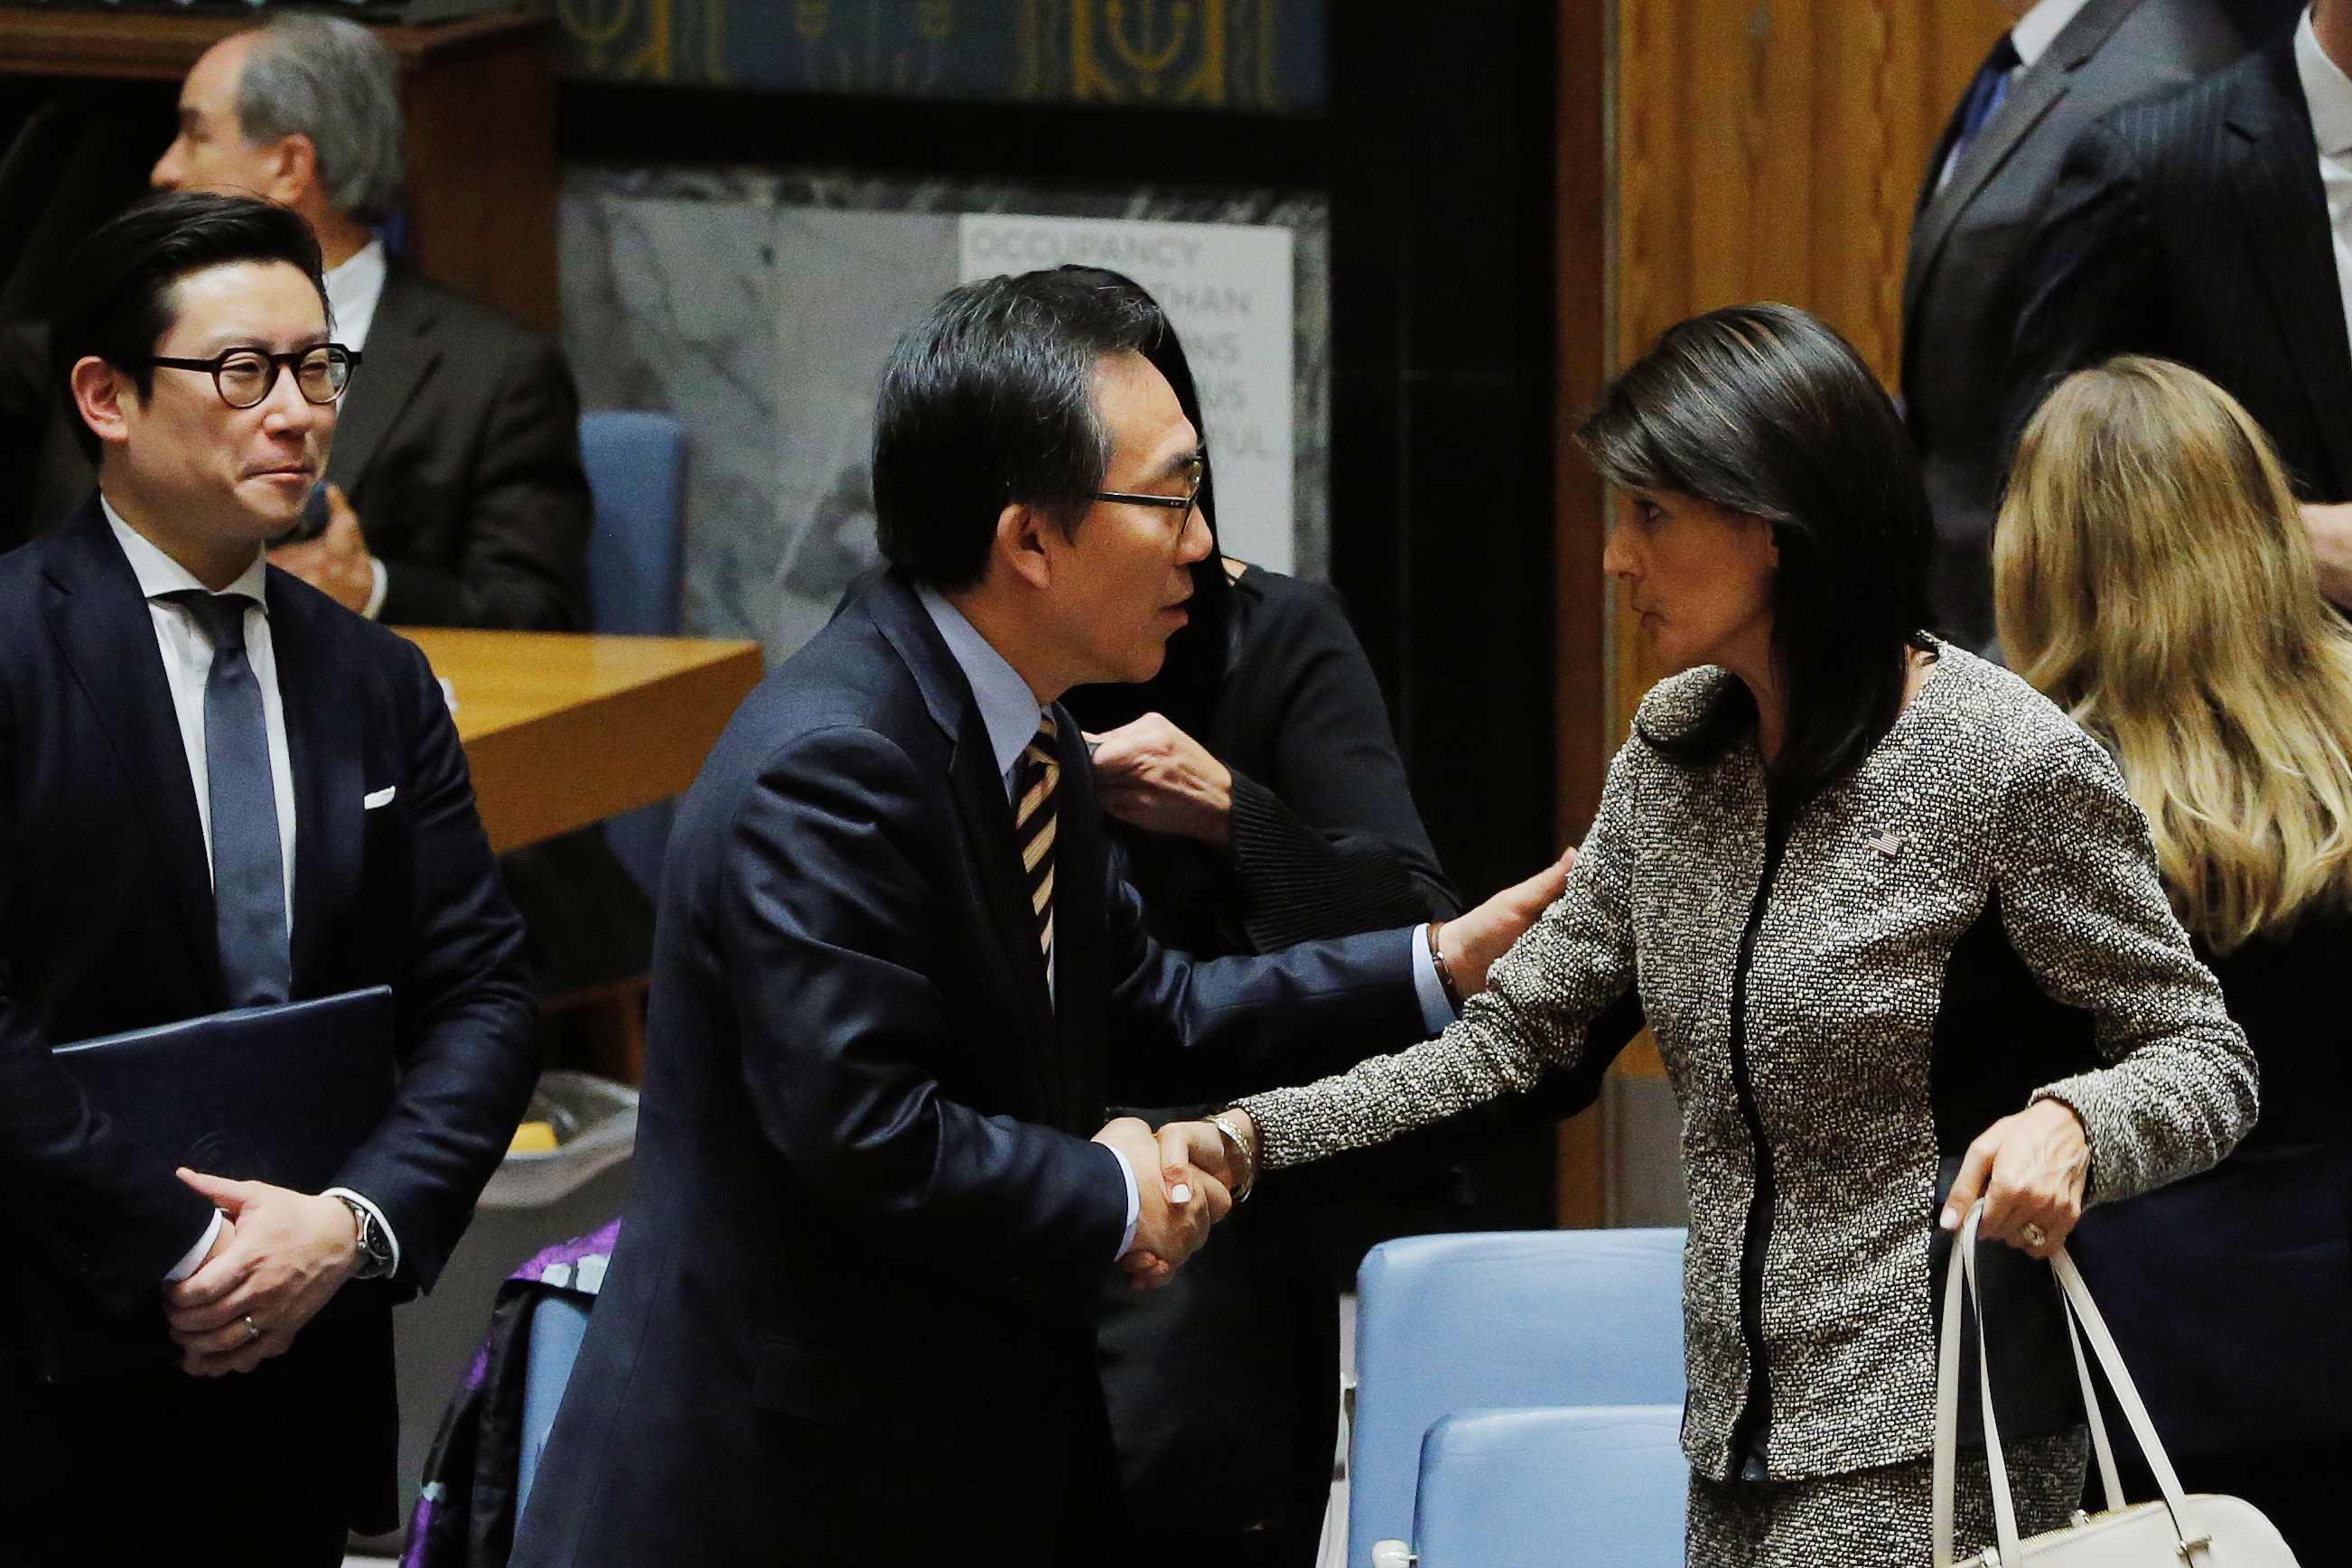 سفيرة الولايات المتحدة لدى الأمم المتحدة نيكي هالي تصافح سفير كوريا الجنوبية